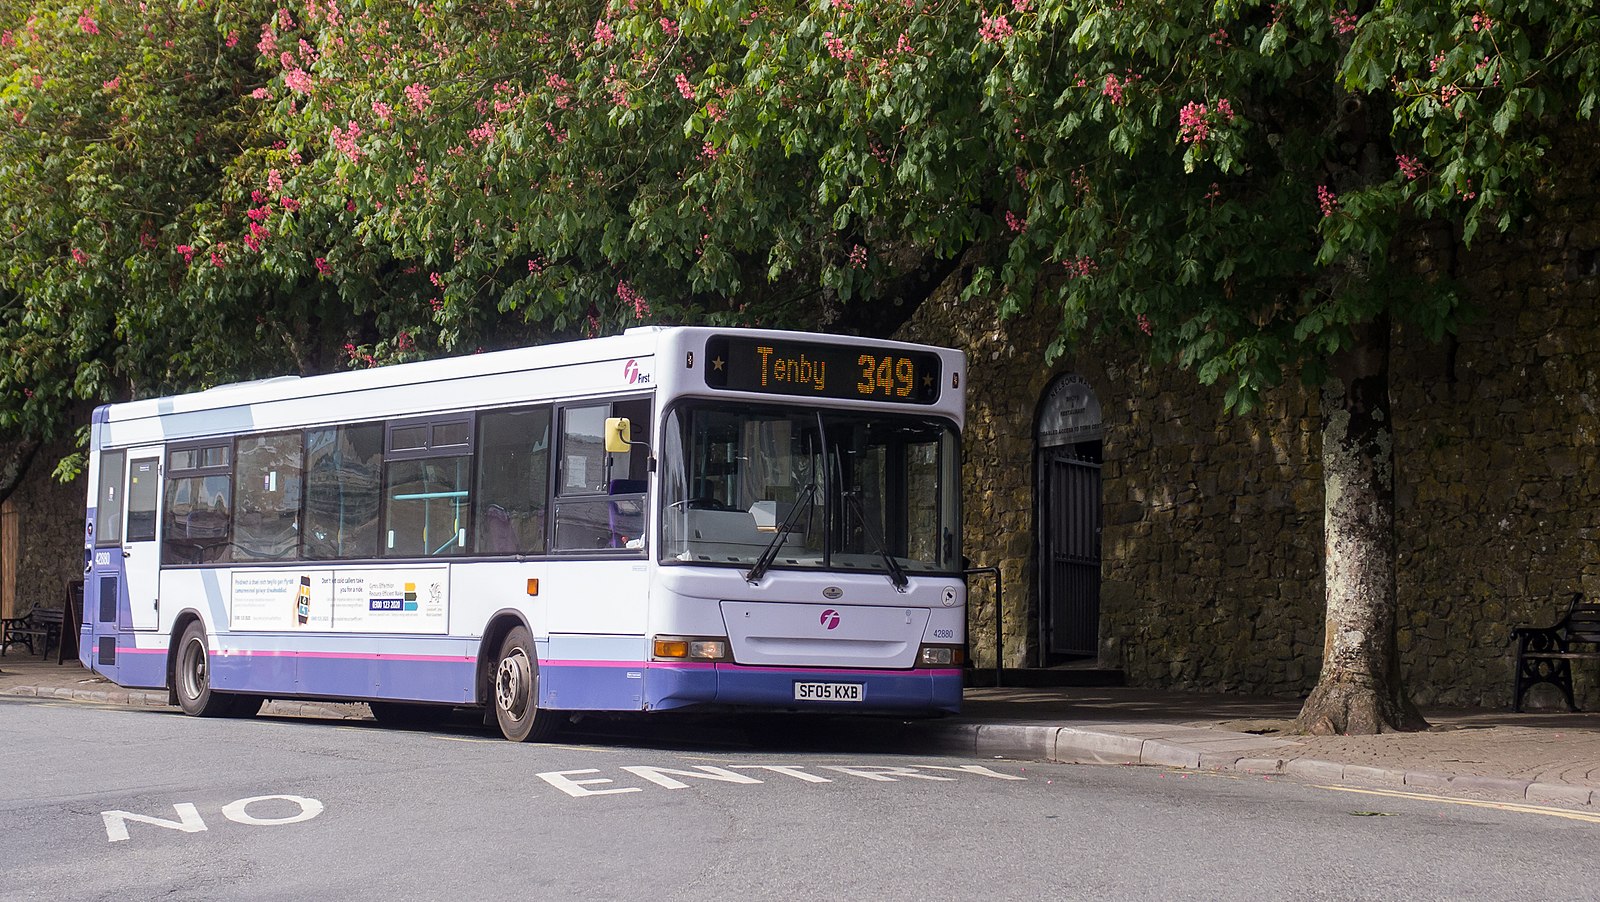 First Cymru bus 349